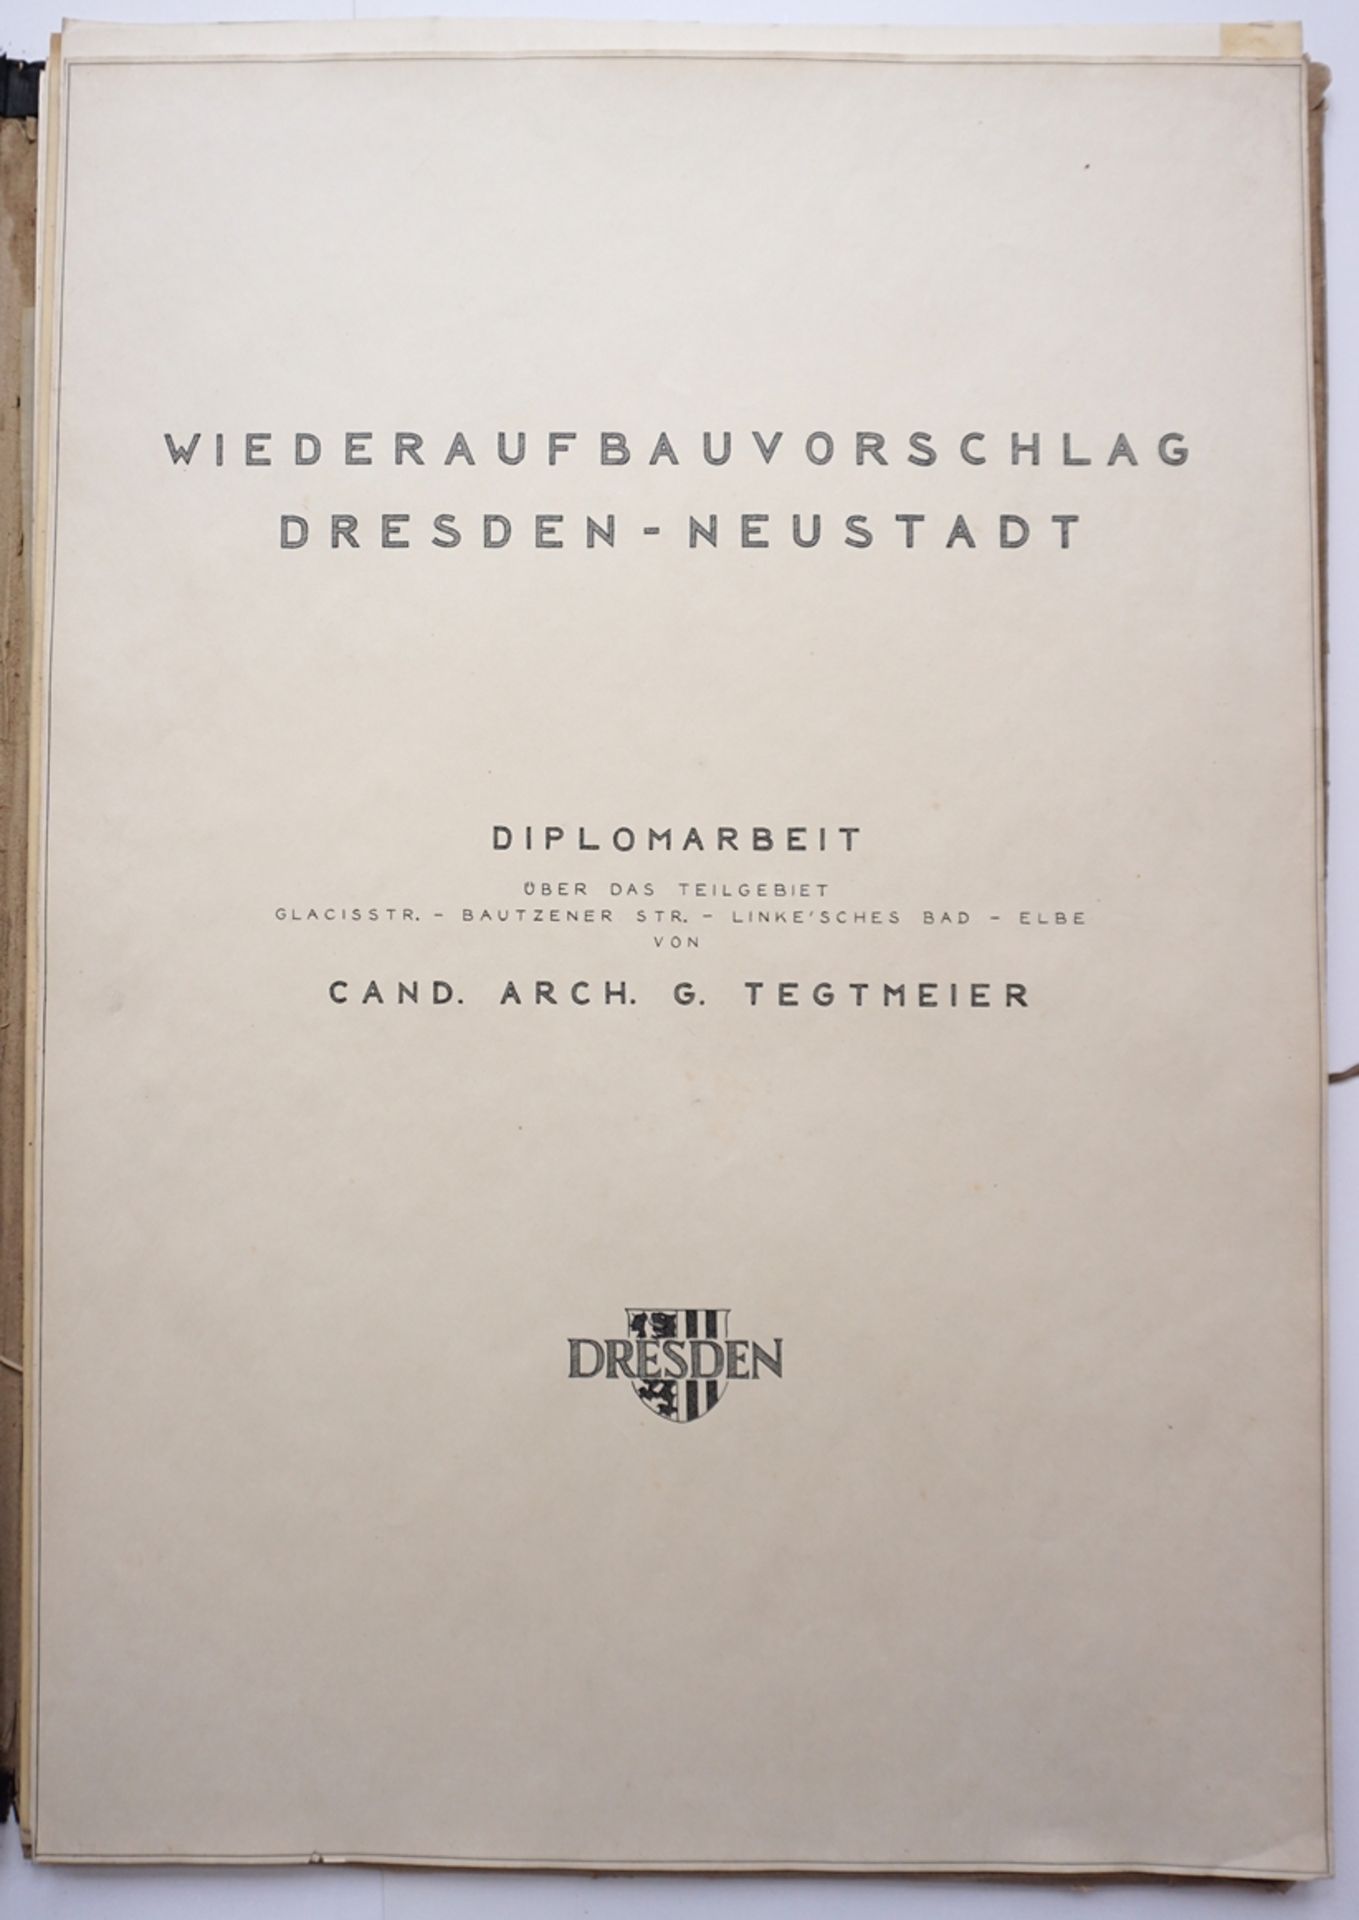 Mappe "Wiederaufbauvorschlag Dresden- Neustadt", Diplomarbeit, H*B 84*59cm, wohl um 1950 - Bild 3 aus 8